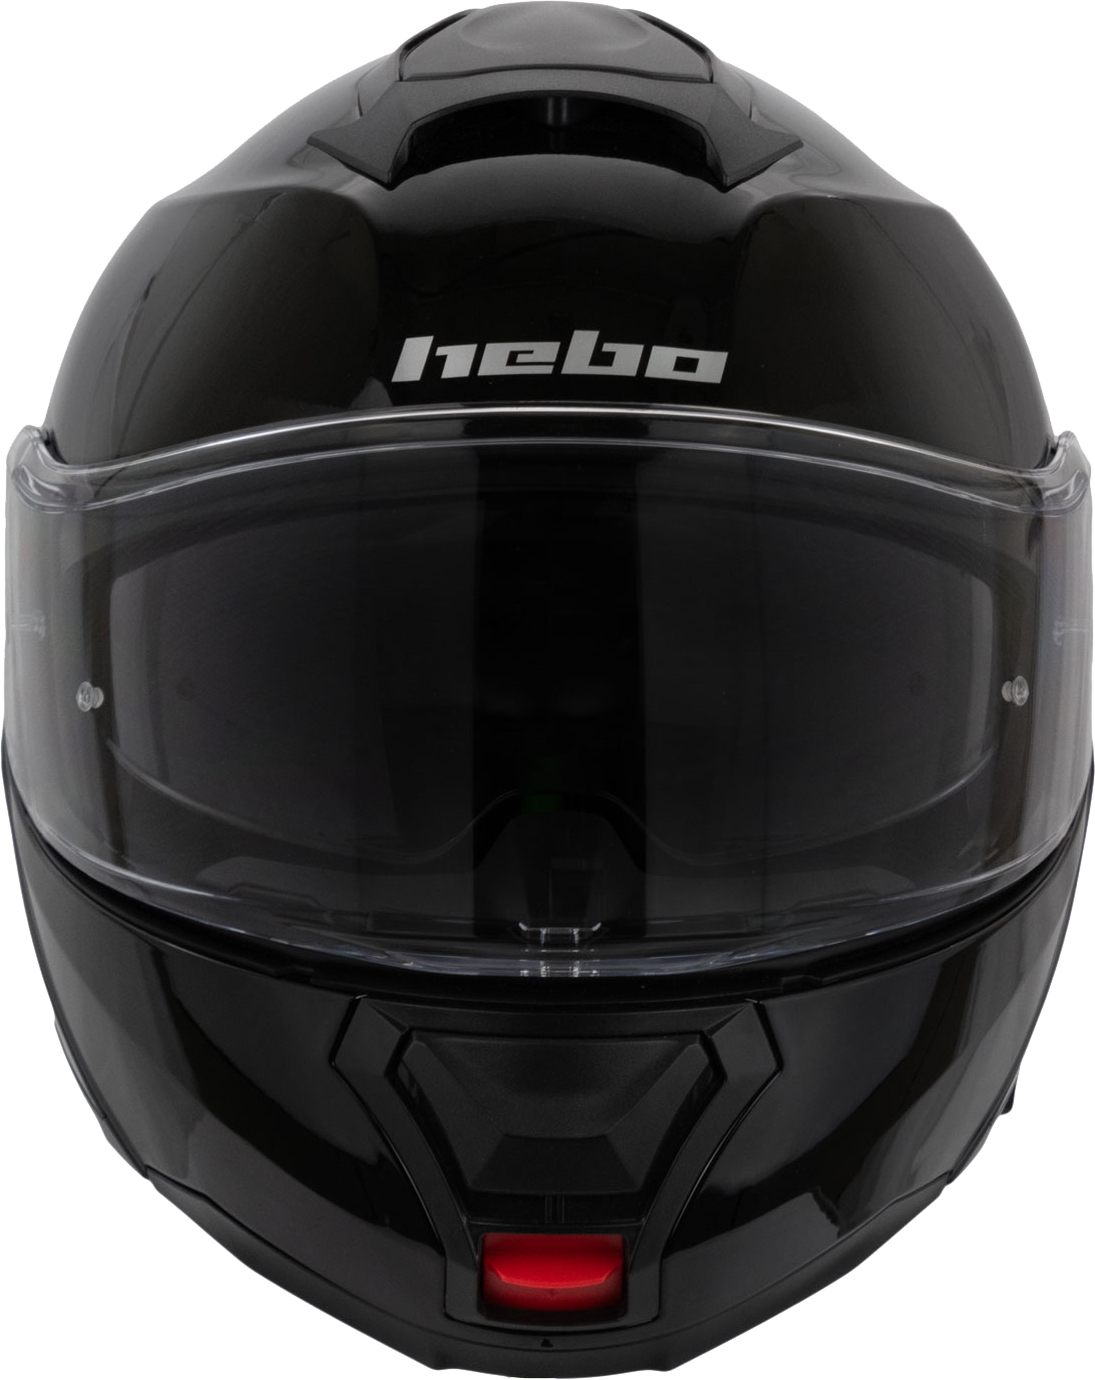 Helmet Flip Up H-272 TOURER IV Black HEBO 